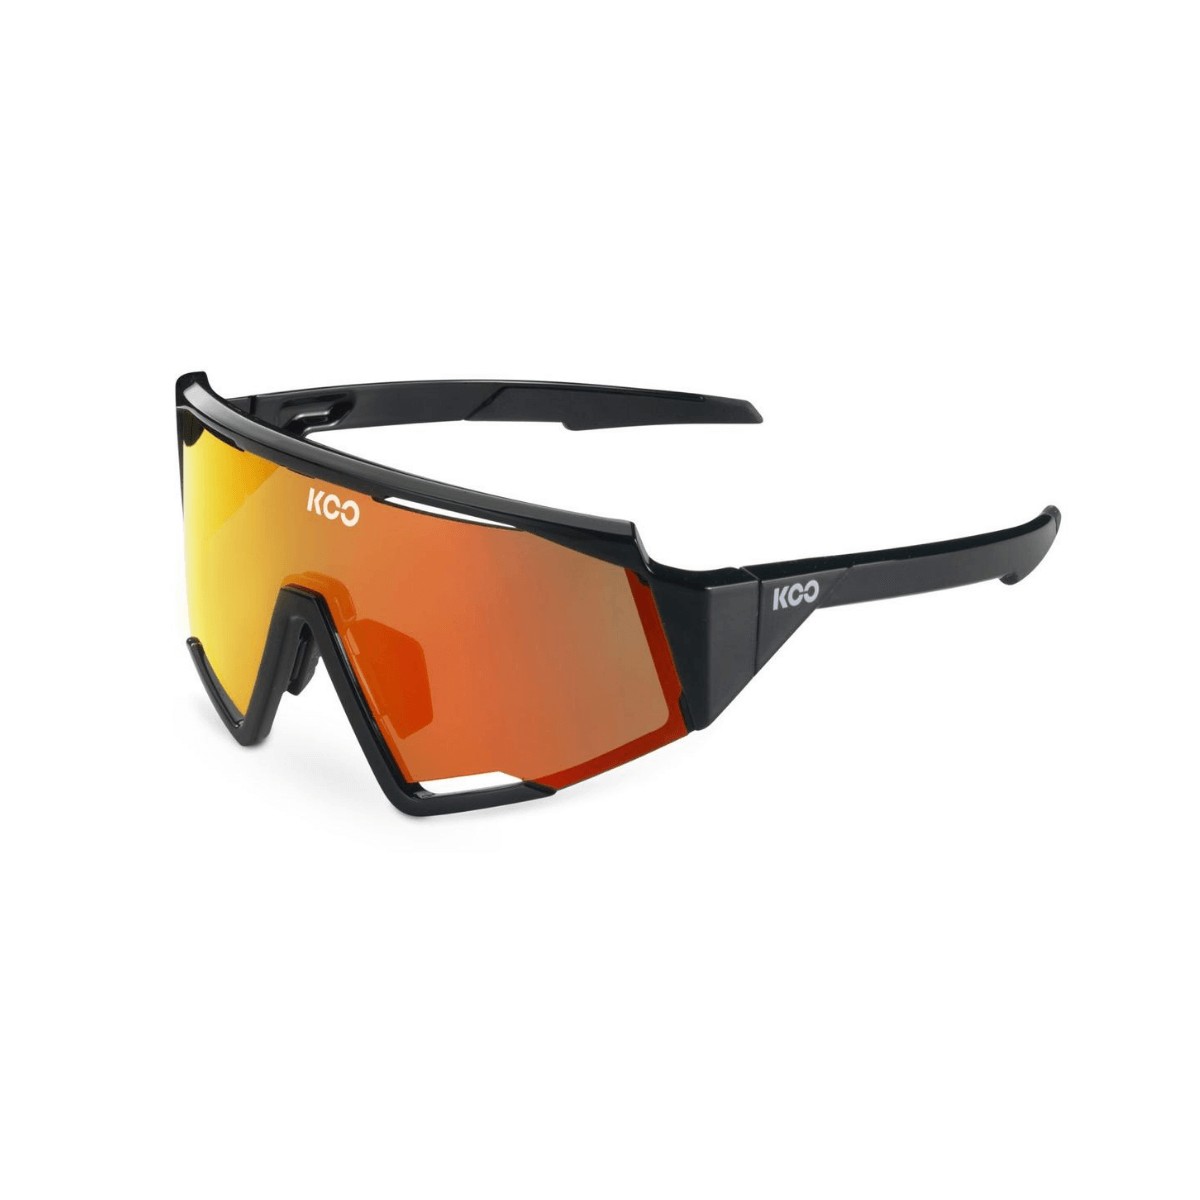 https://www.365rider.com/28457-thickbox_default/koo-spectro-glasses-black-orange-lens.jpg